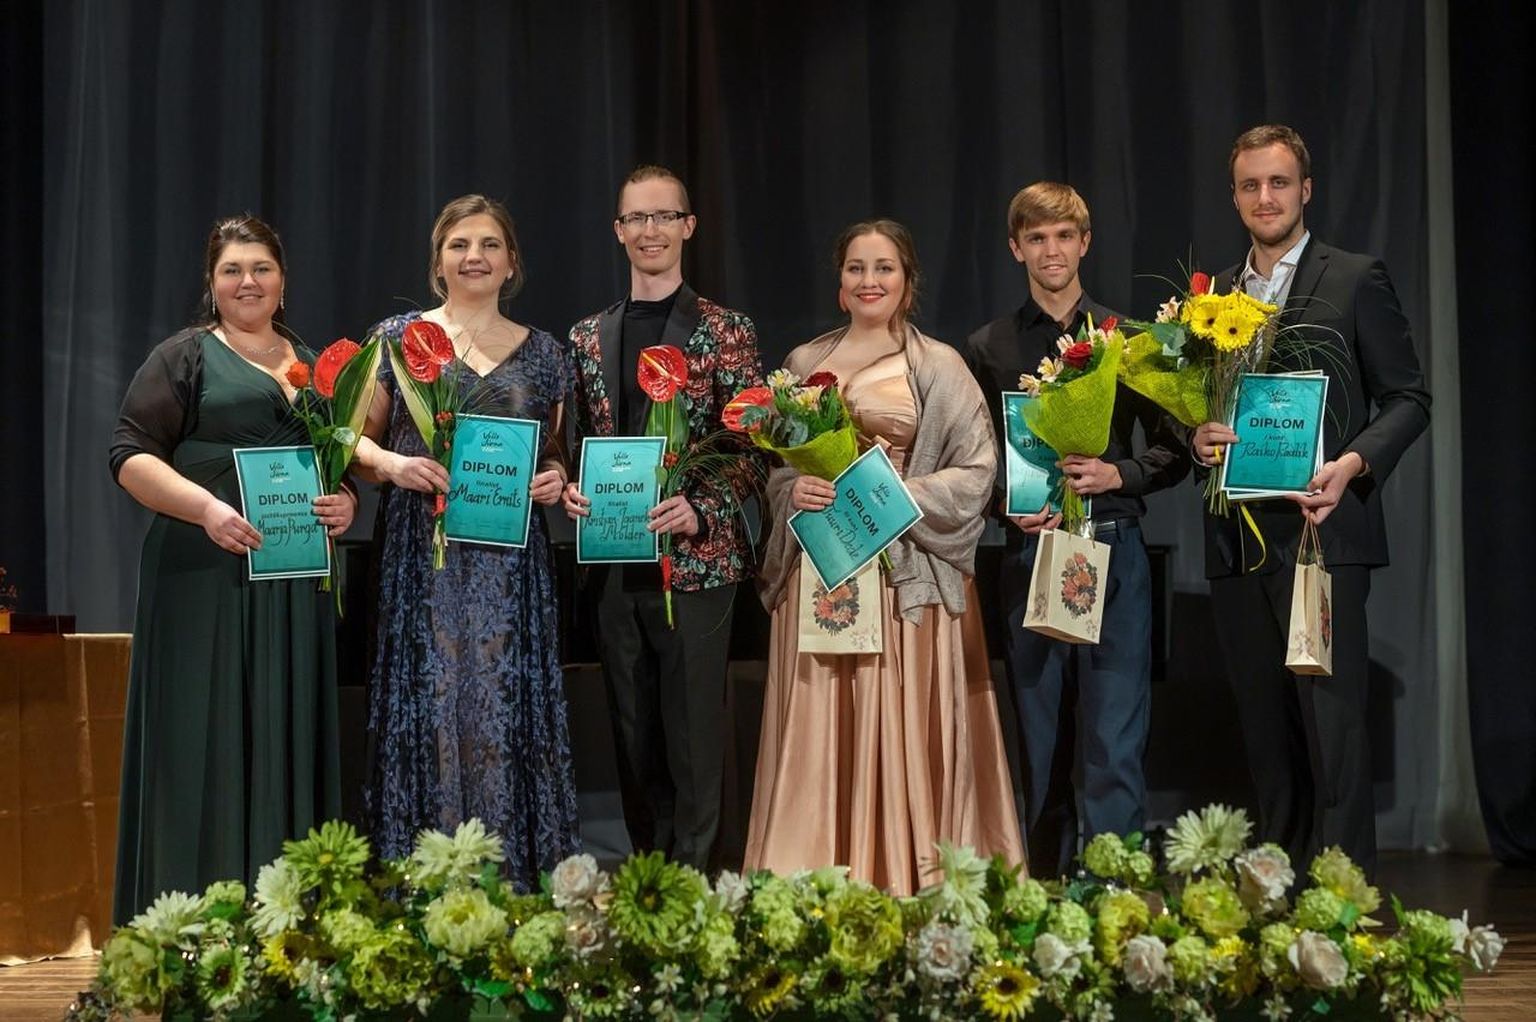 Vello Jürna konkursi finalistid Maarja Purga (vasakult), Maari Ernits, Kristjan Jaanek Mölder, Tuuri Dede, Janari Jorro ja Raiko Raalik, kes pälvis võidu ning kolm eripreemiat.